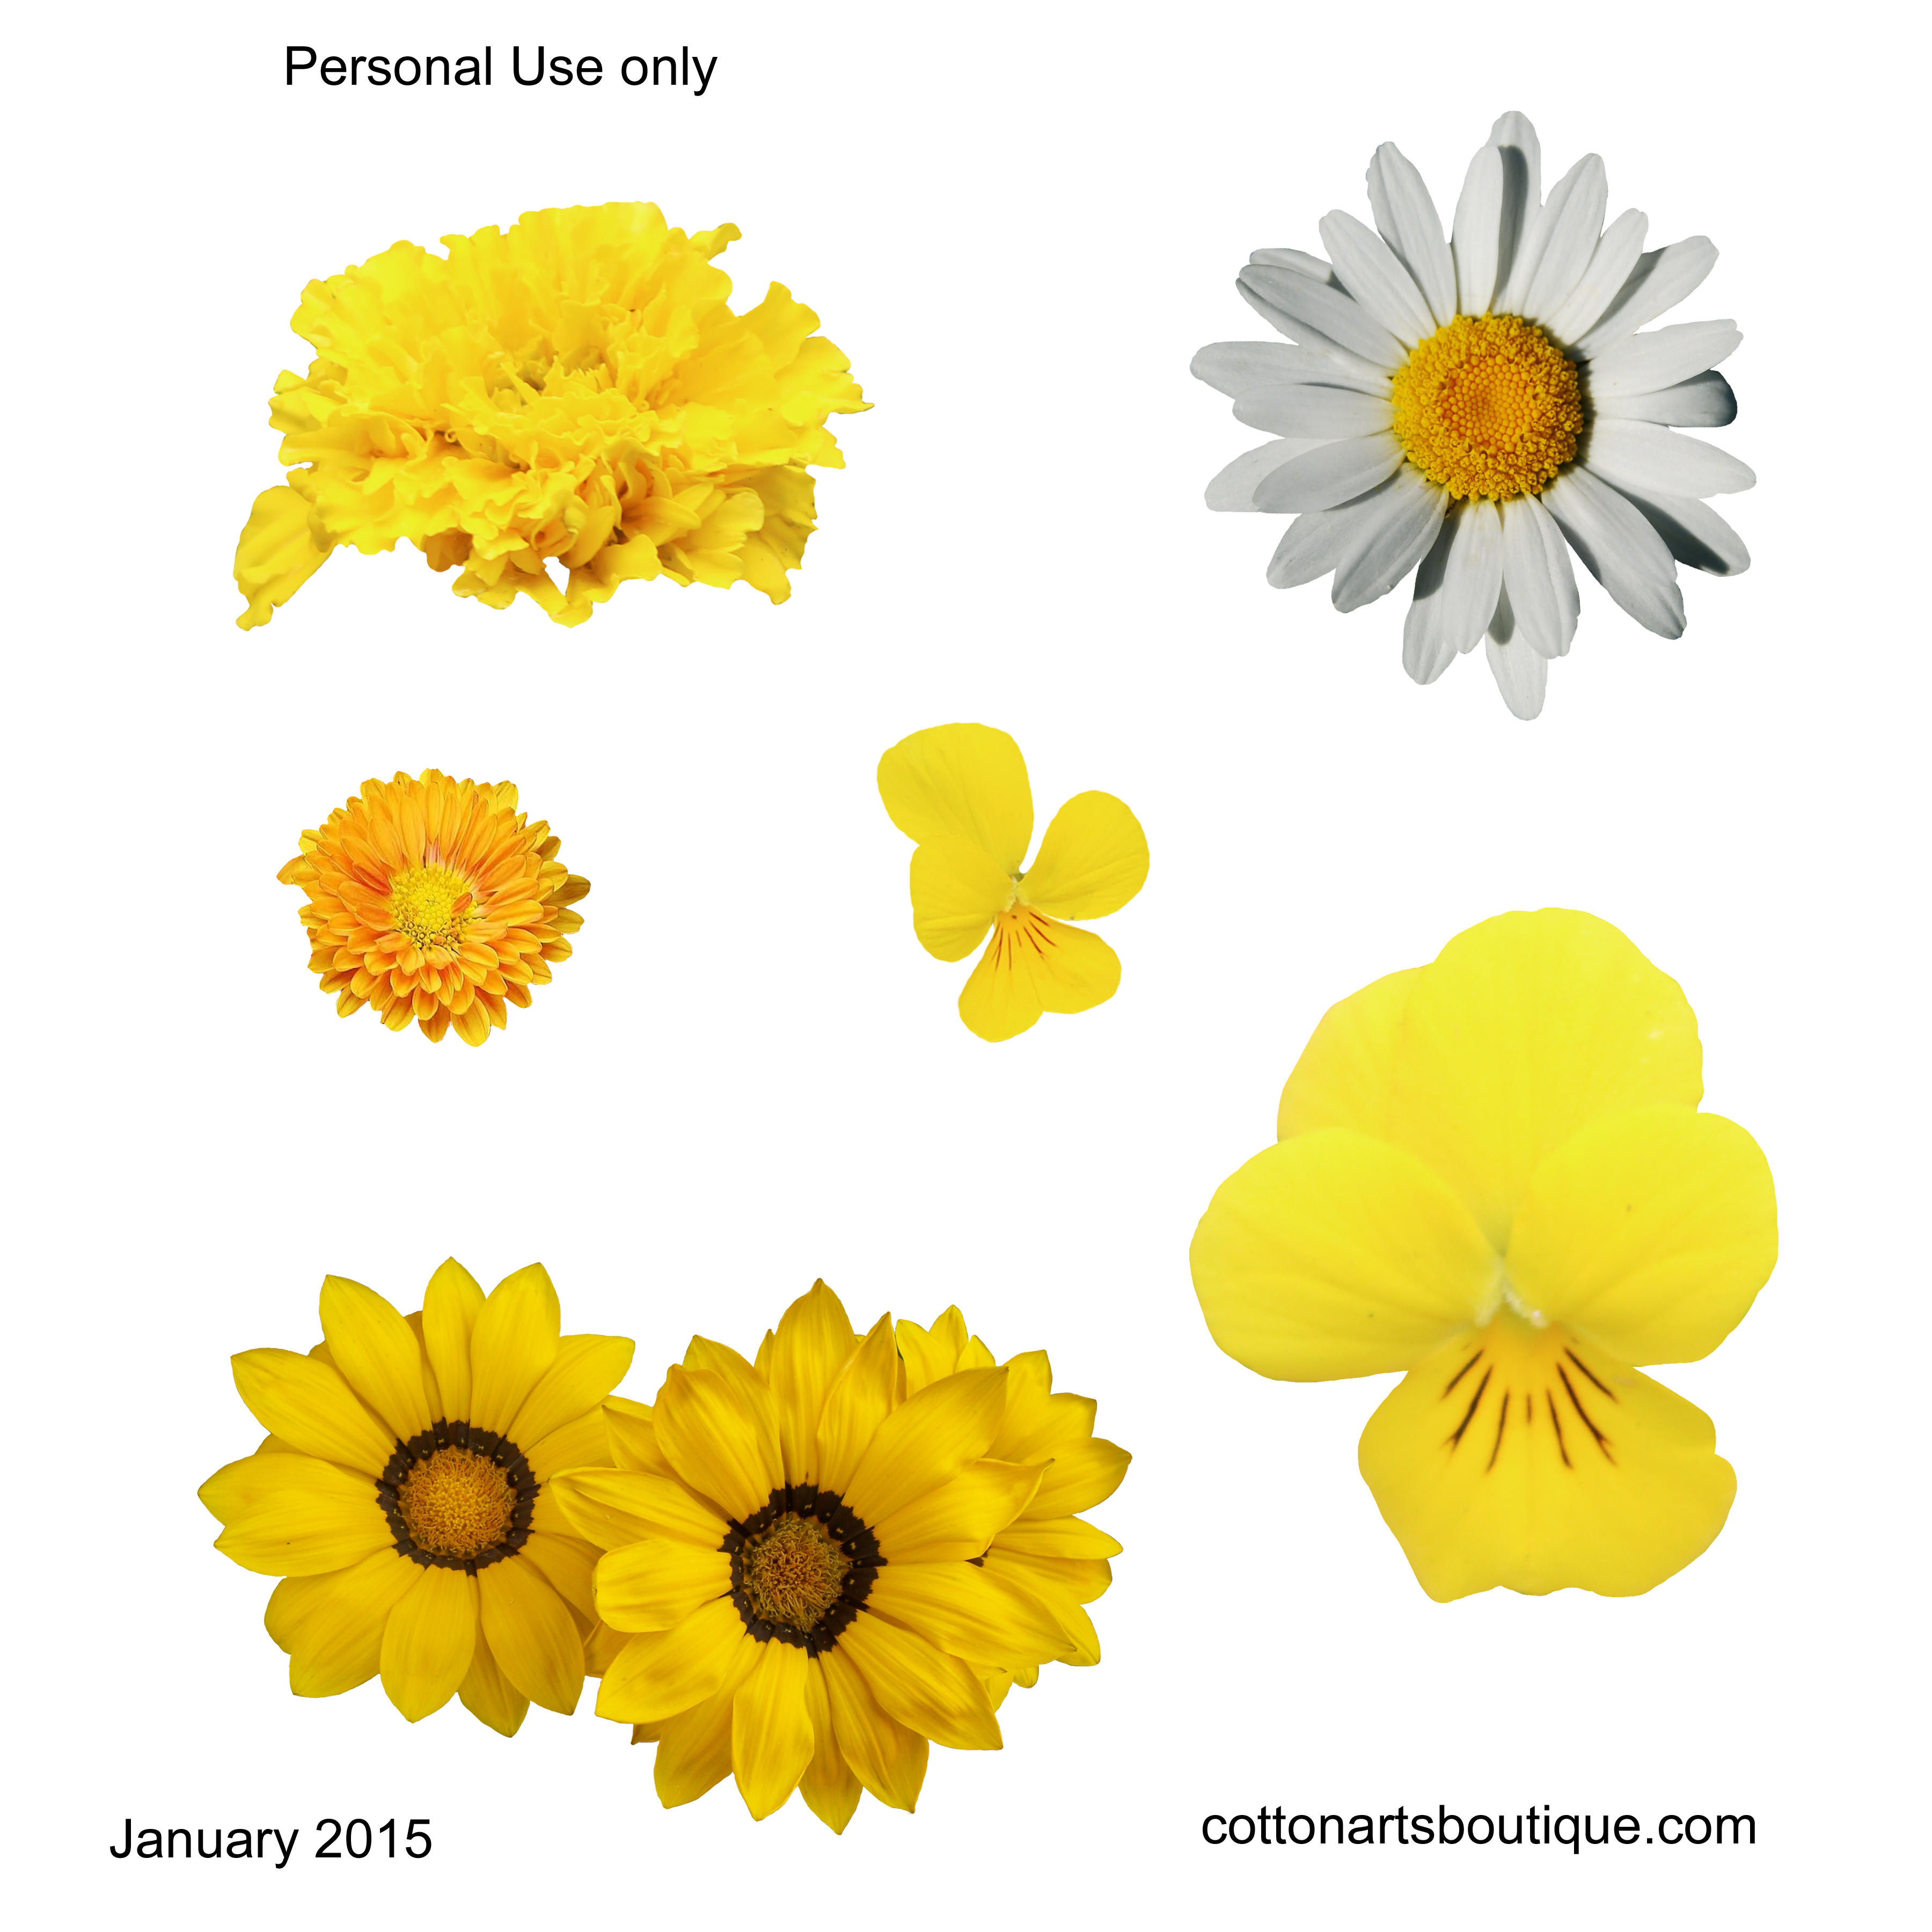 http://cottonartsboutique.com/wordpress/wp-content/uploads/2015/01/flowers-yellow-cottonartsboutique-2015.png